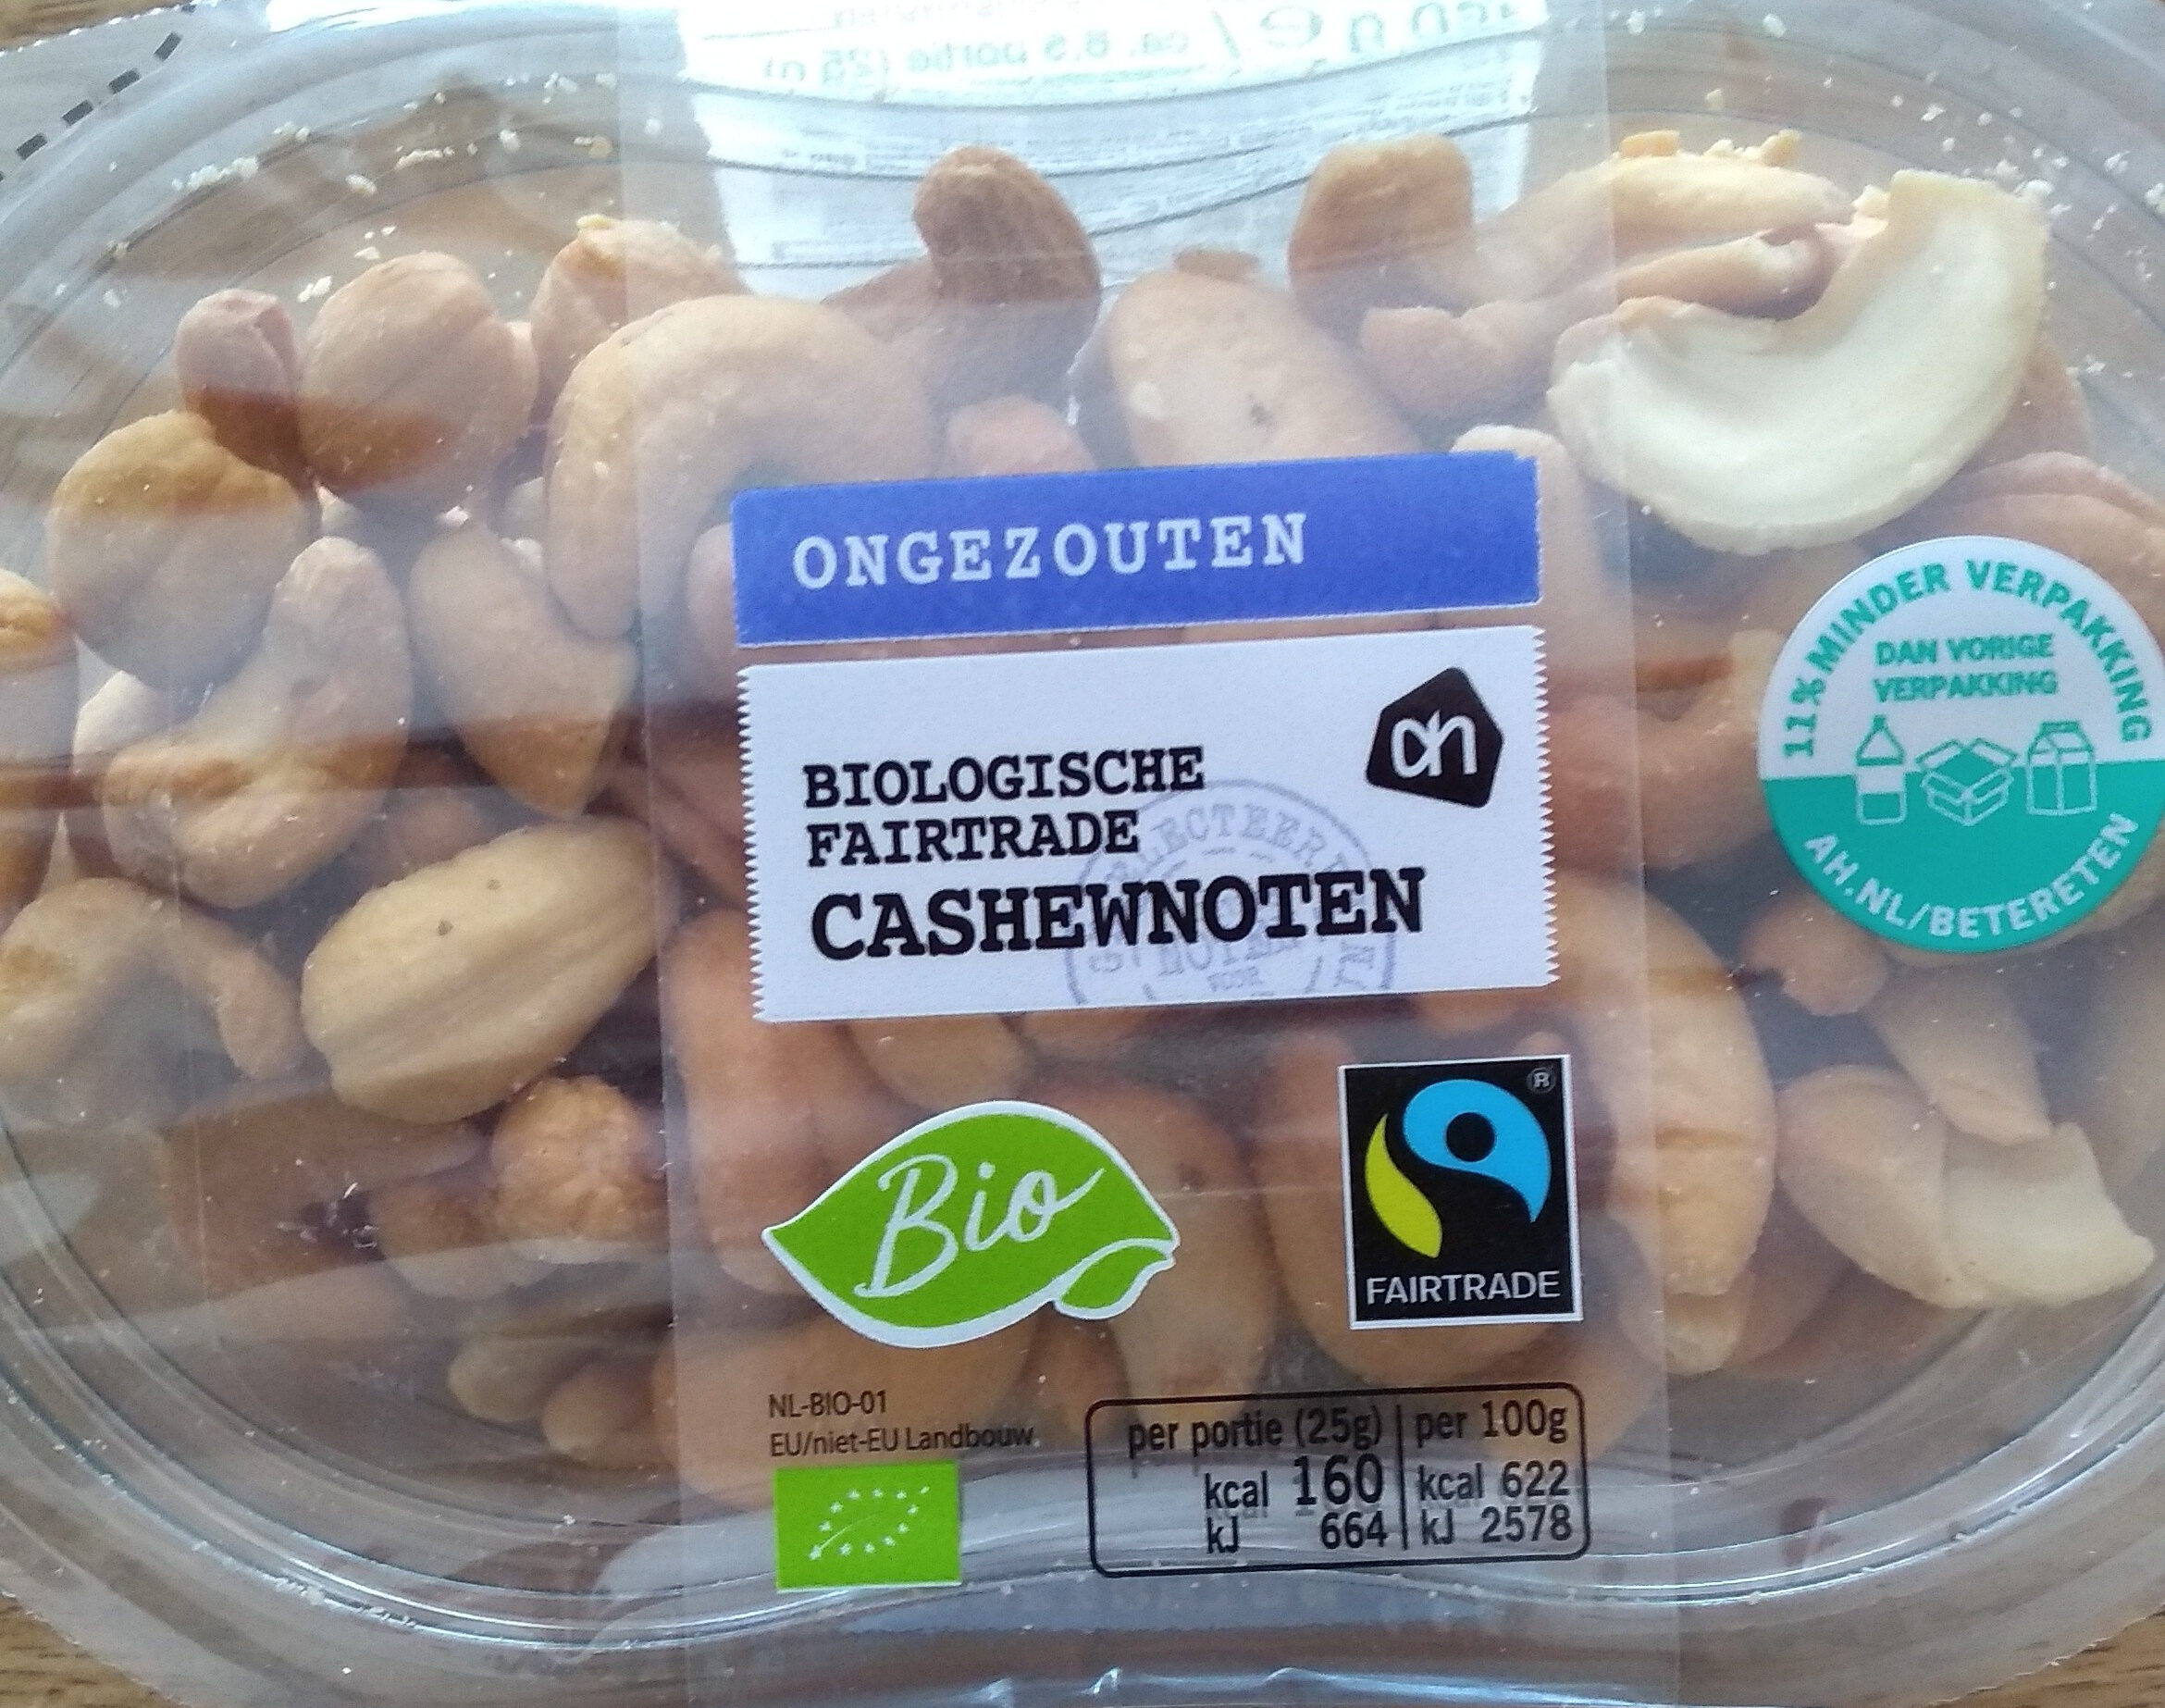 Cashewnoten Biologische Fairtrade - Product - nl